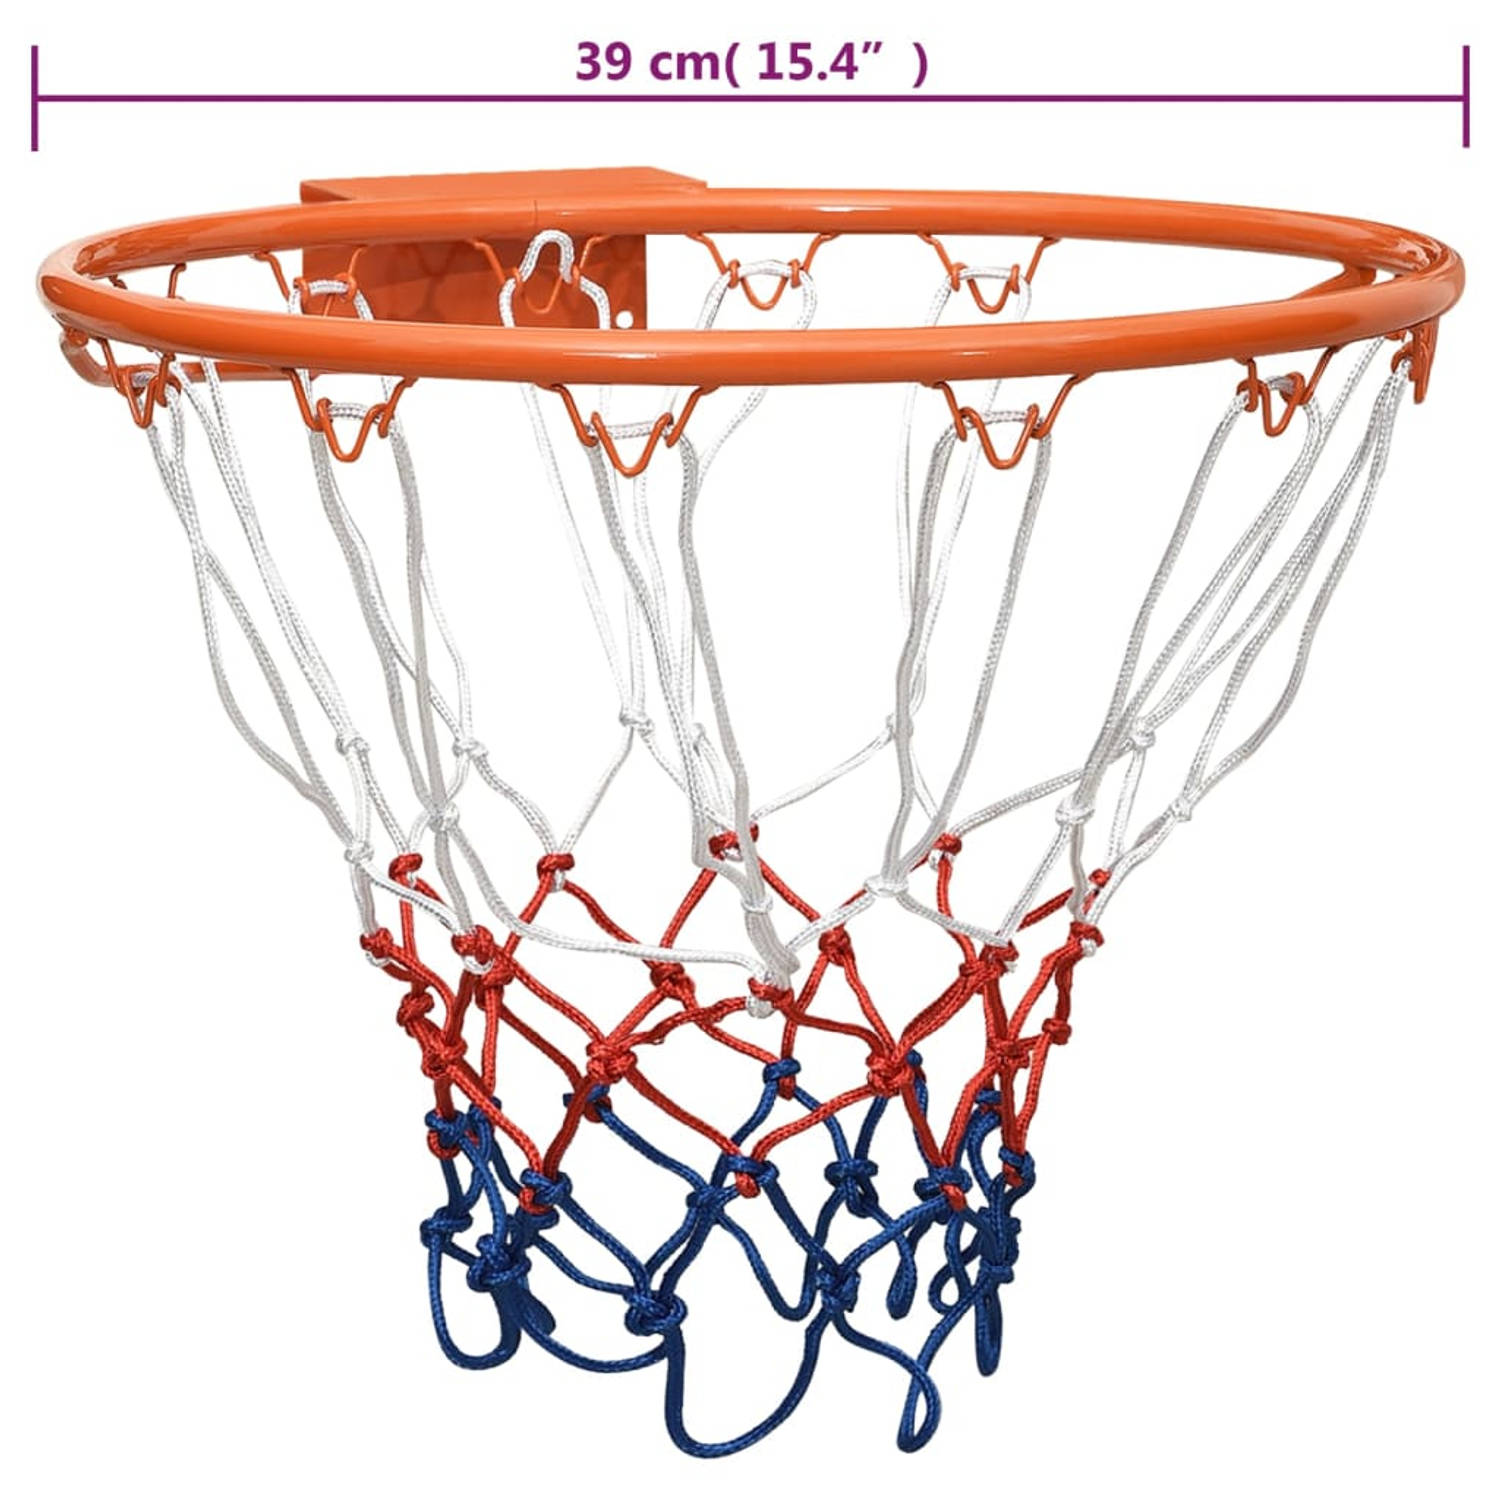 Basketbalring 39 cm staal oranje | Blokker